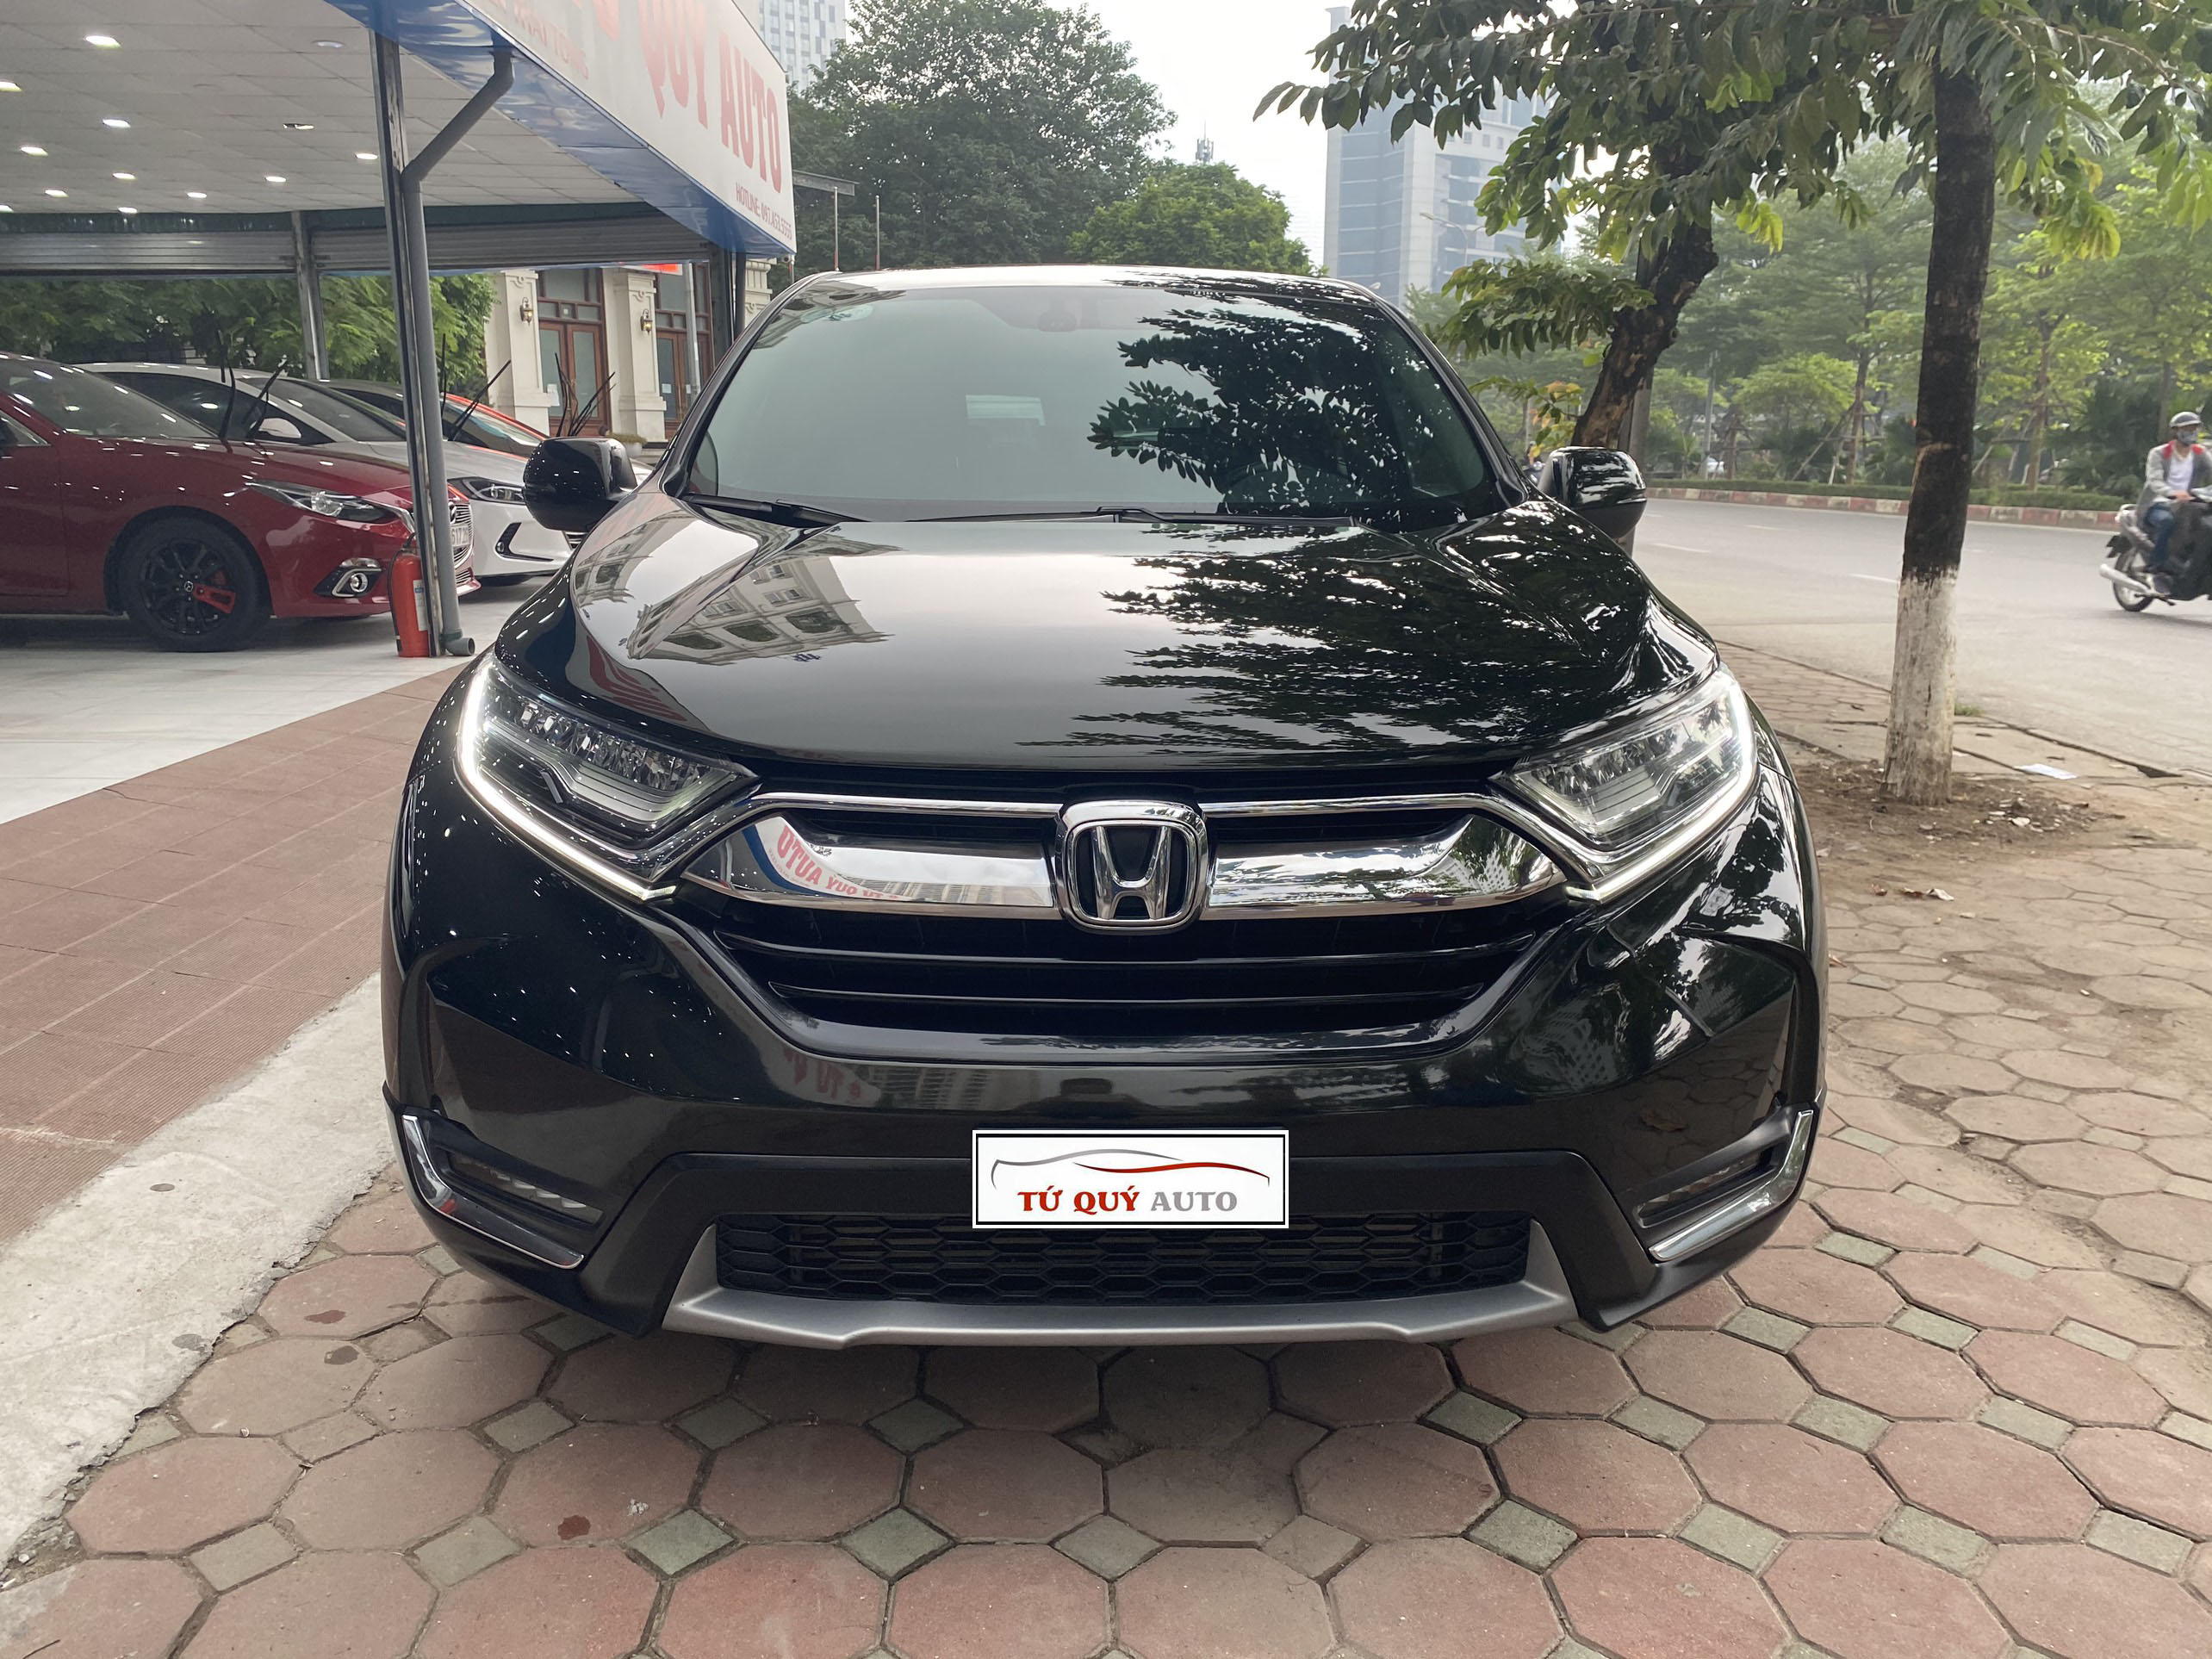 Hình ảnh chi tiết Honda CRV 2018 hoàn toàn mới